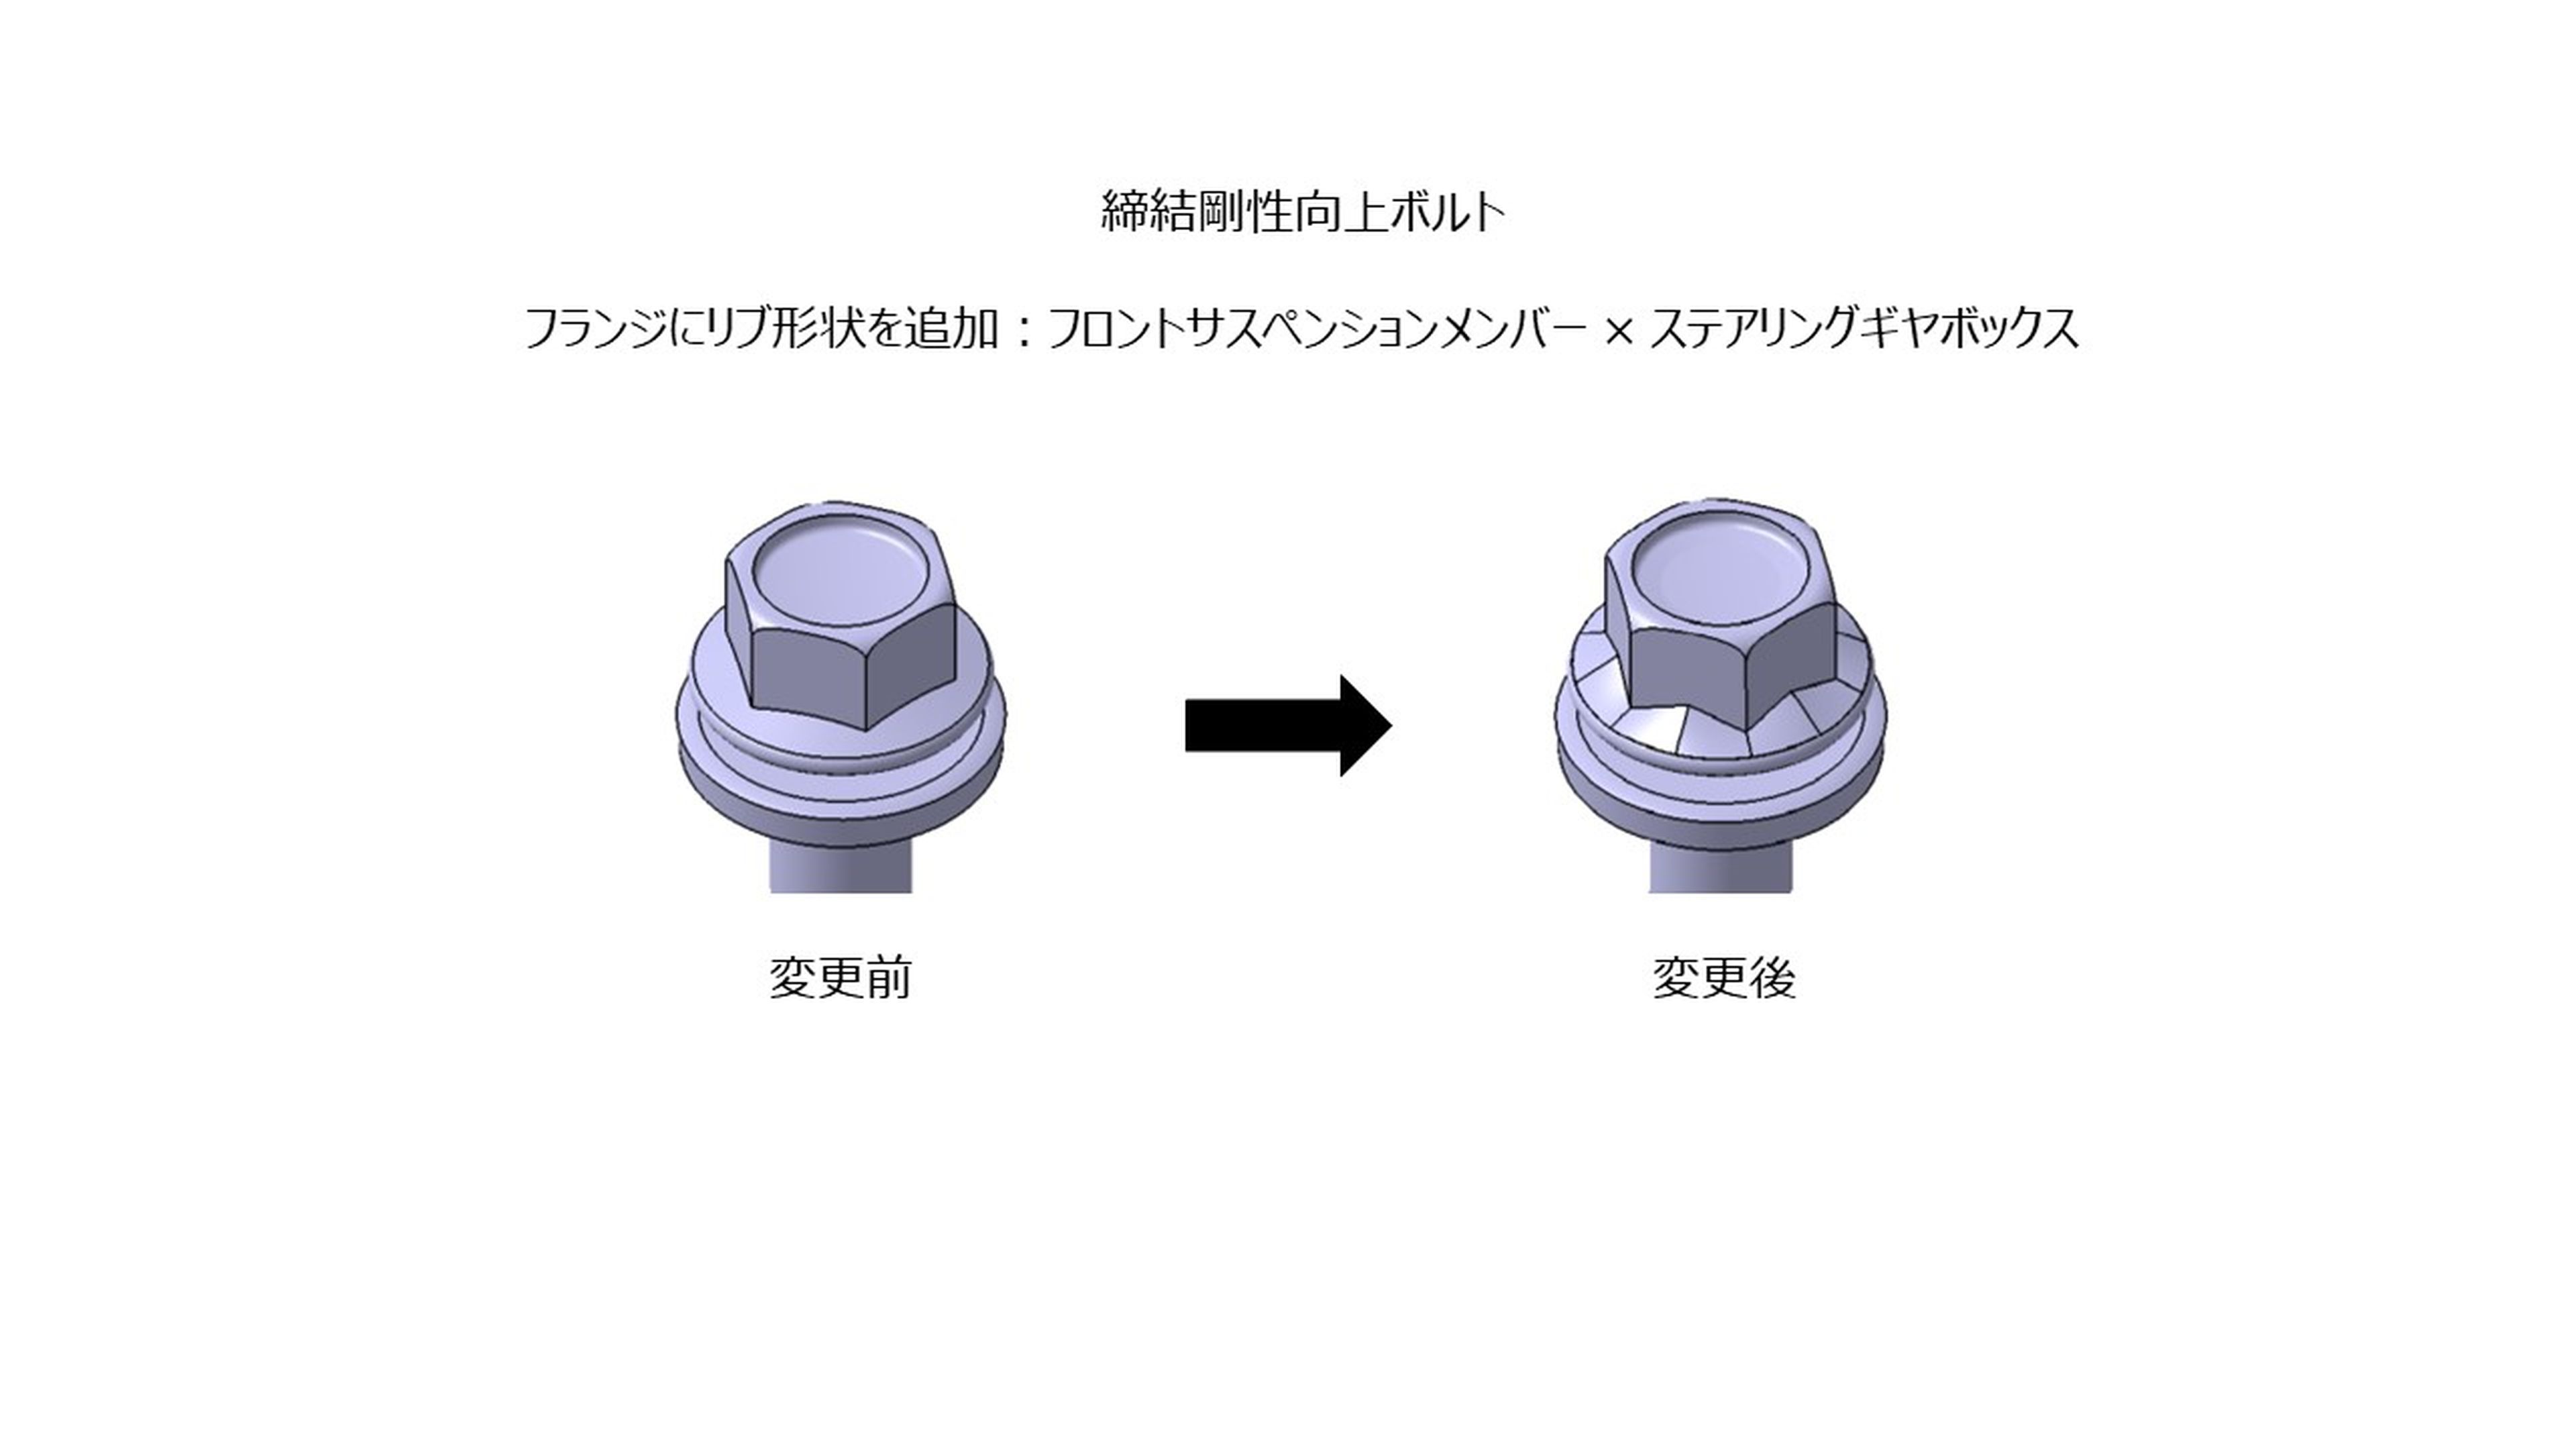 Cambios en los tornillos y tomas de aire del Toyota GR Corolla actualizado para Japón